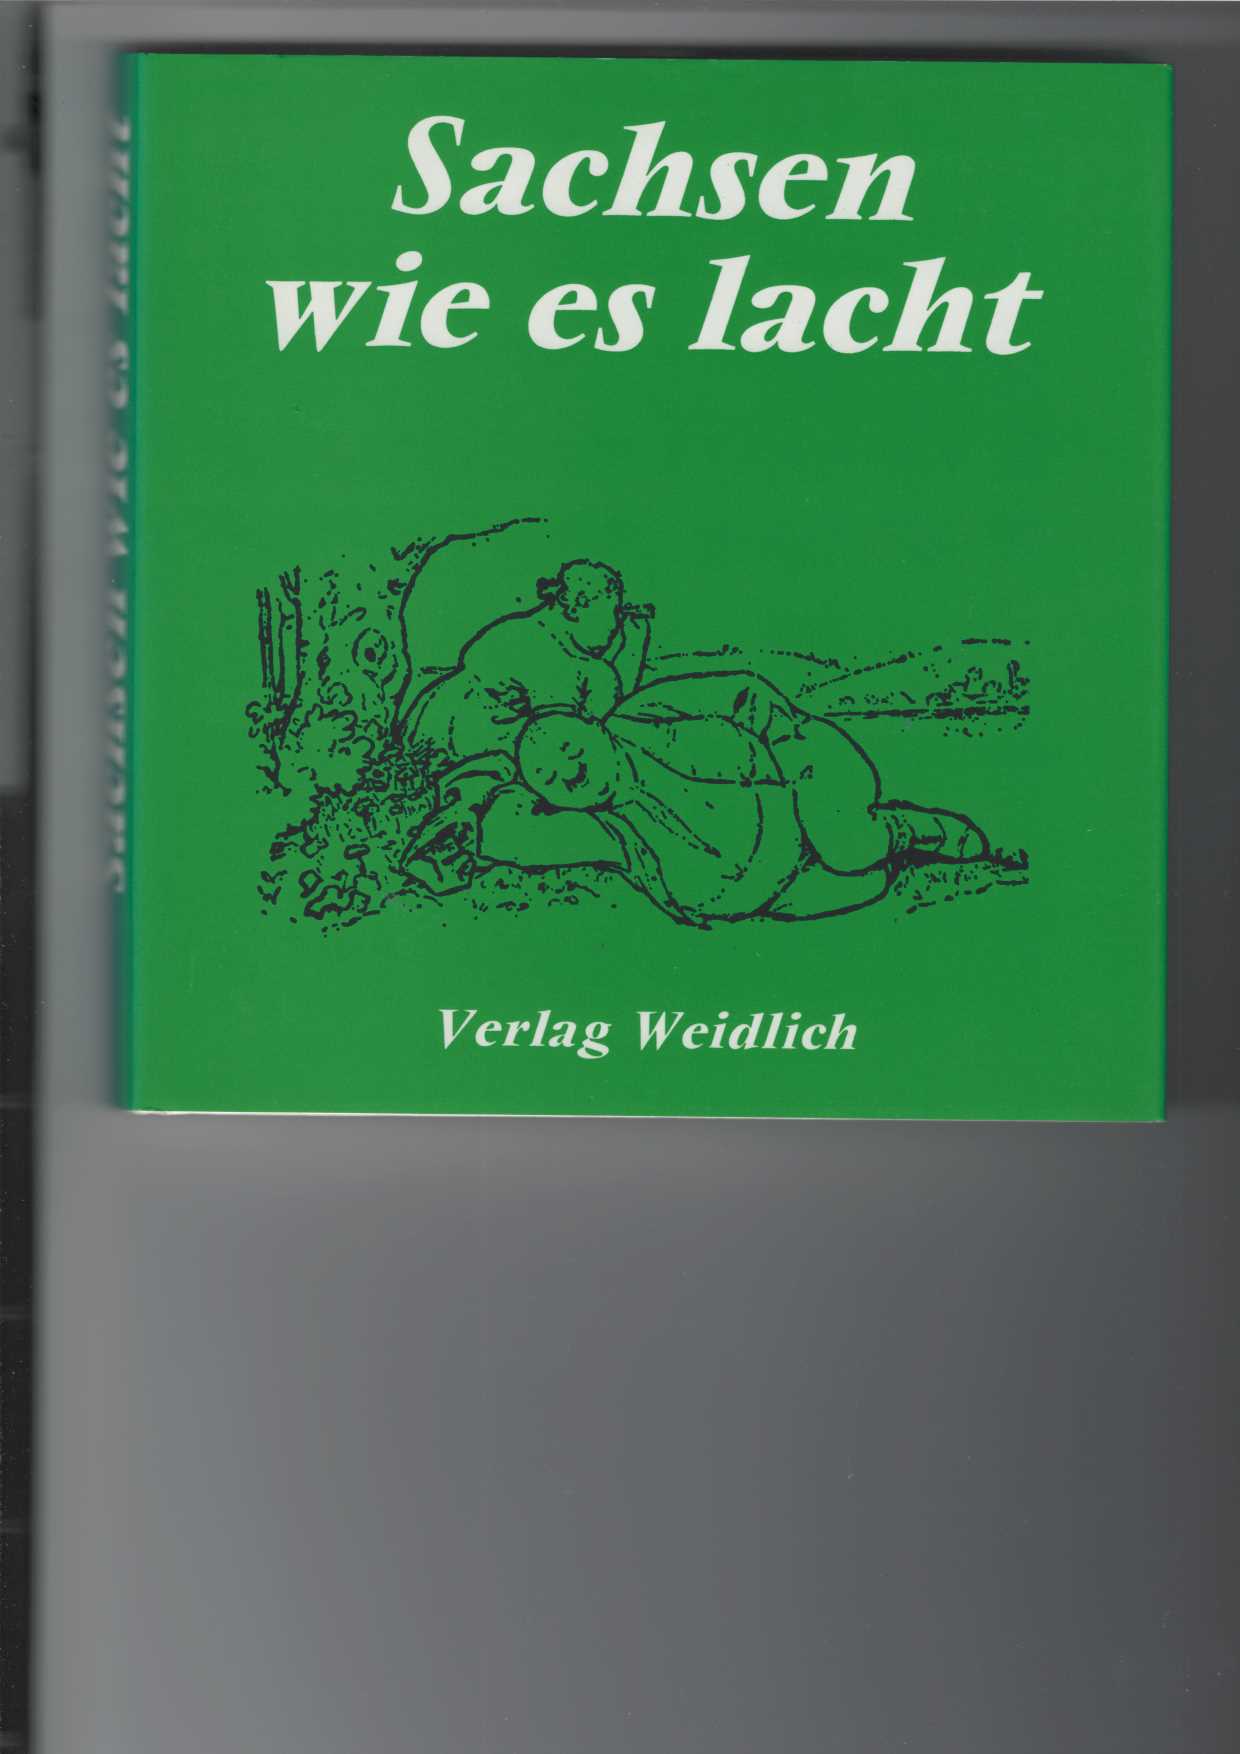 Sachsen wie es lacht. Eine Sammlung sächsischen Humors herausgegeben von Wolfgang Ehrhardt Heinold. Mit Zeichnungen. - Unknown